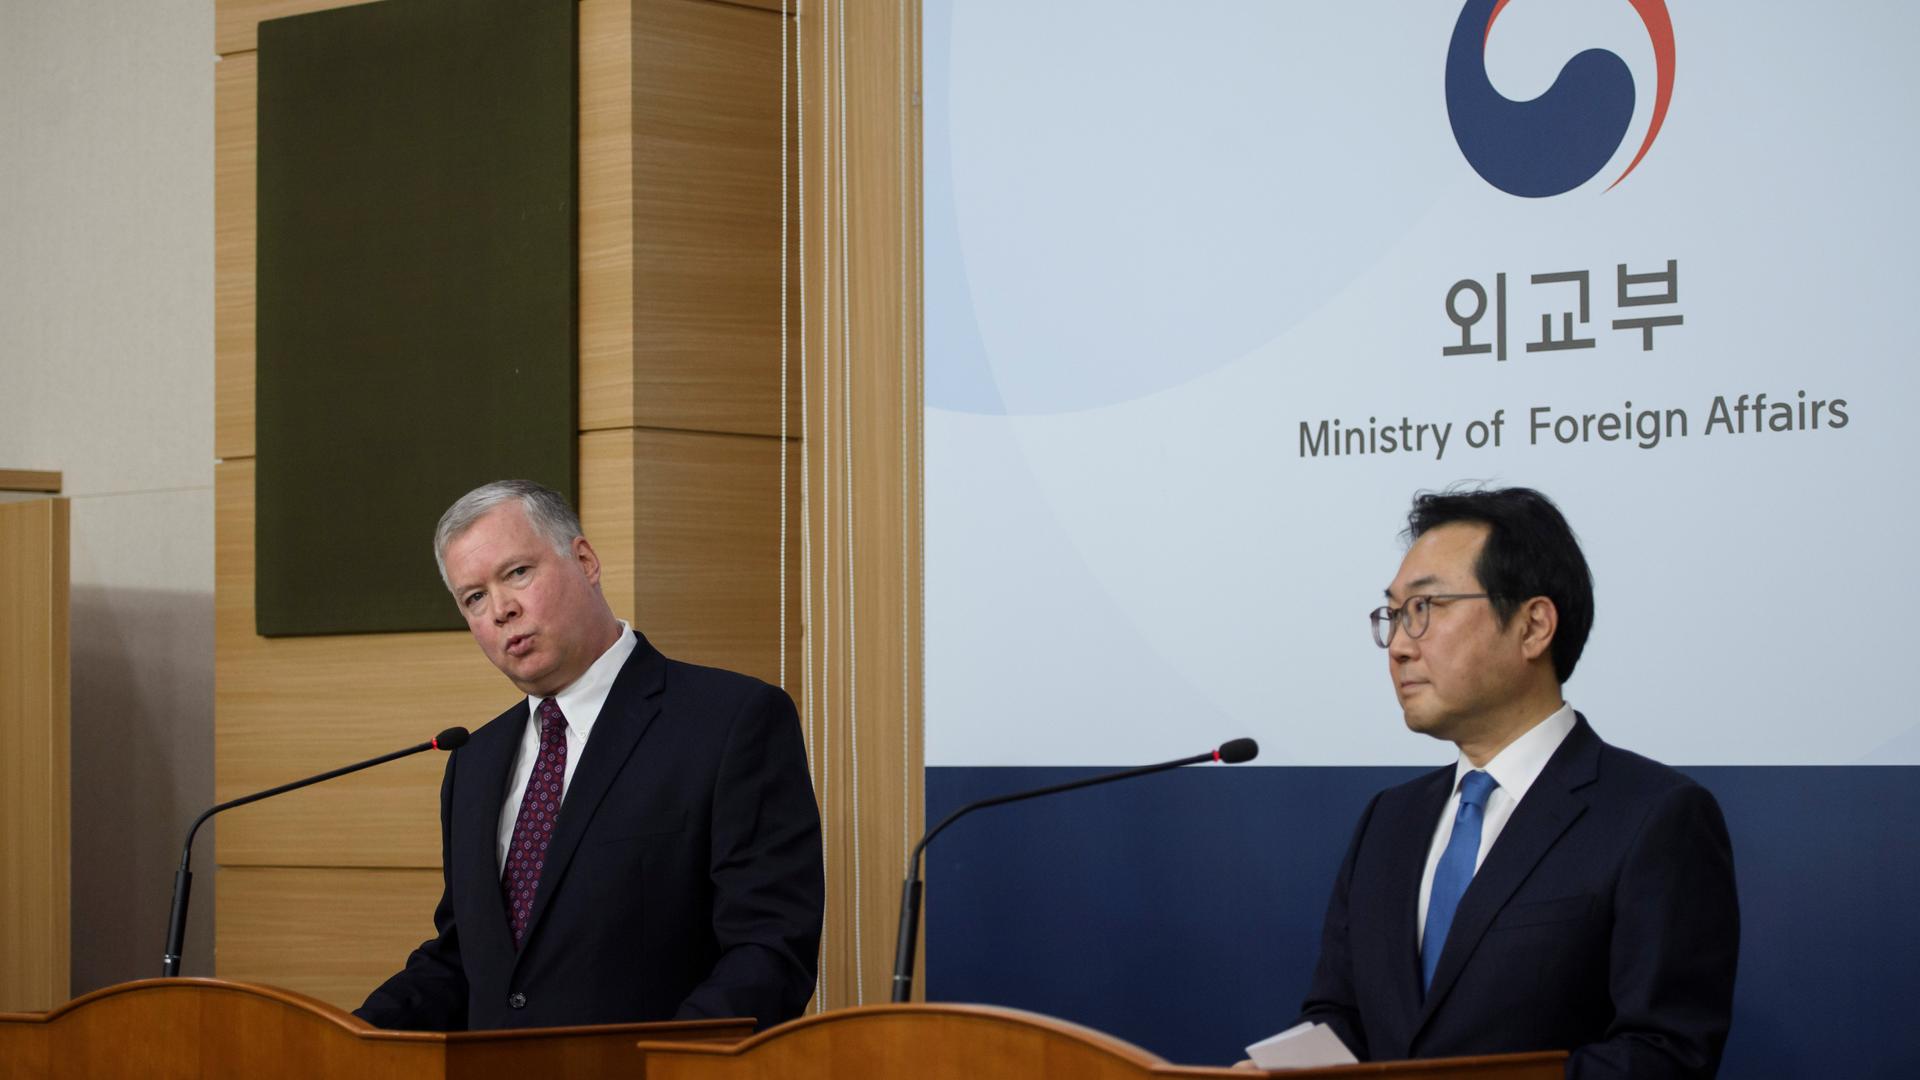 American man wearing dark blue suit speaks at podium standing next to Korean man wearing dark blue suit. 